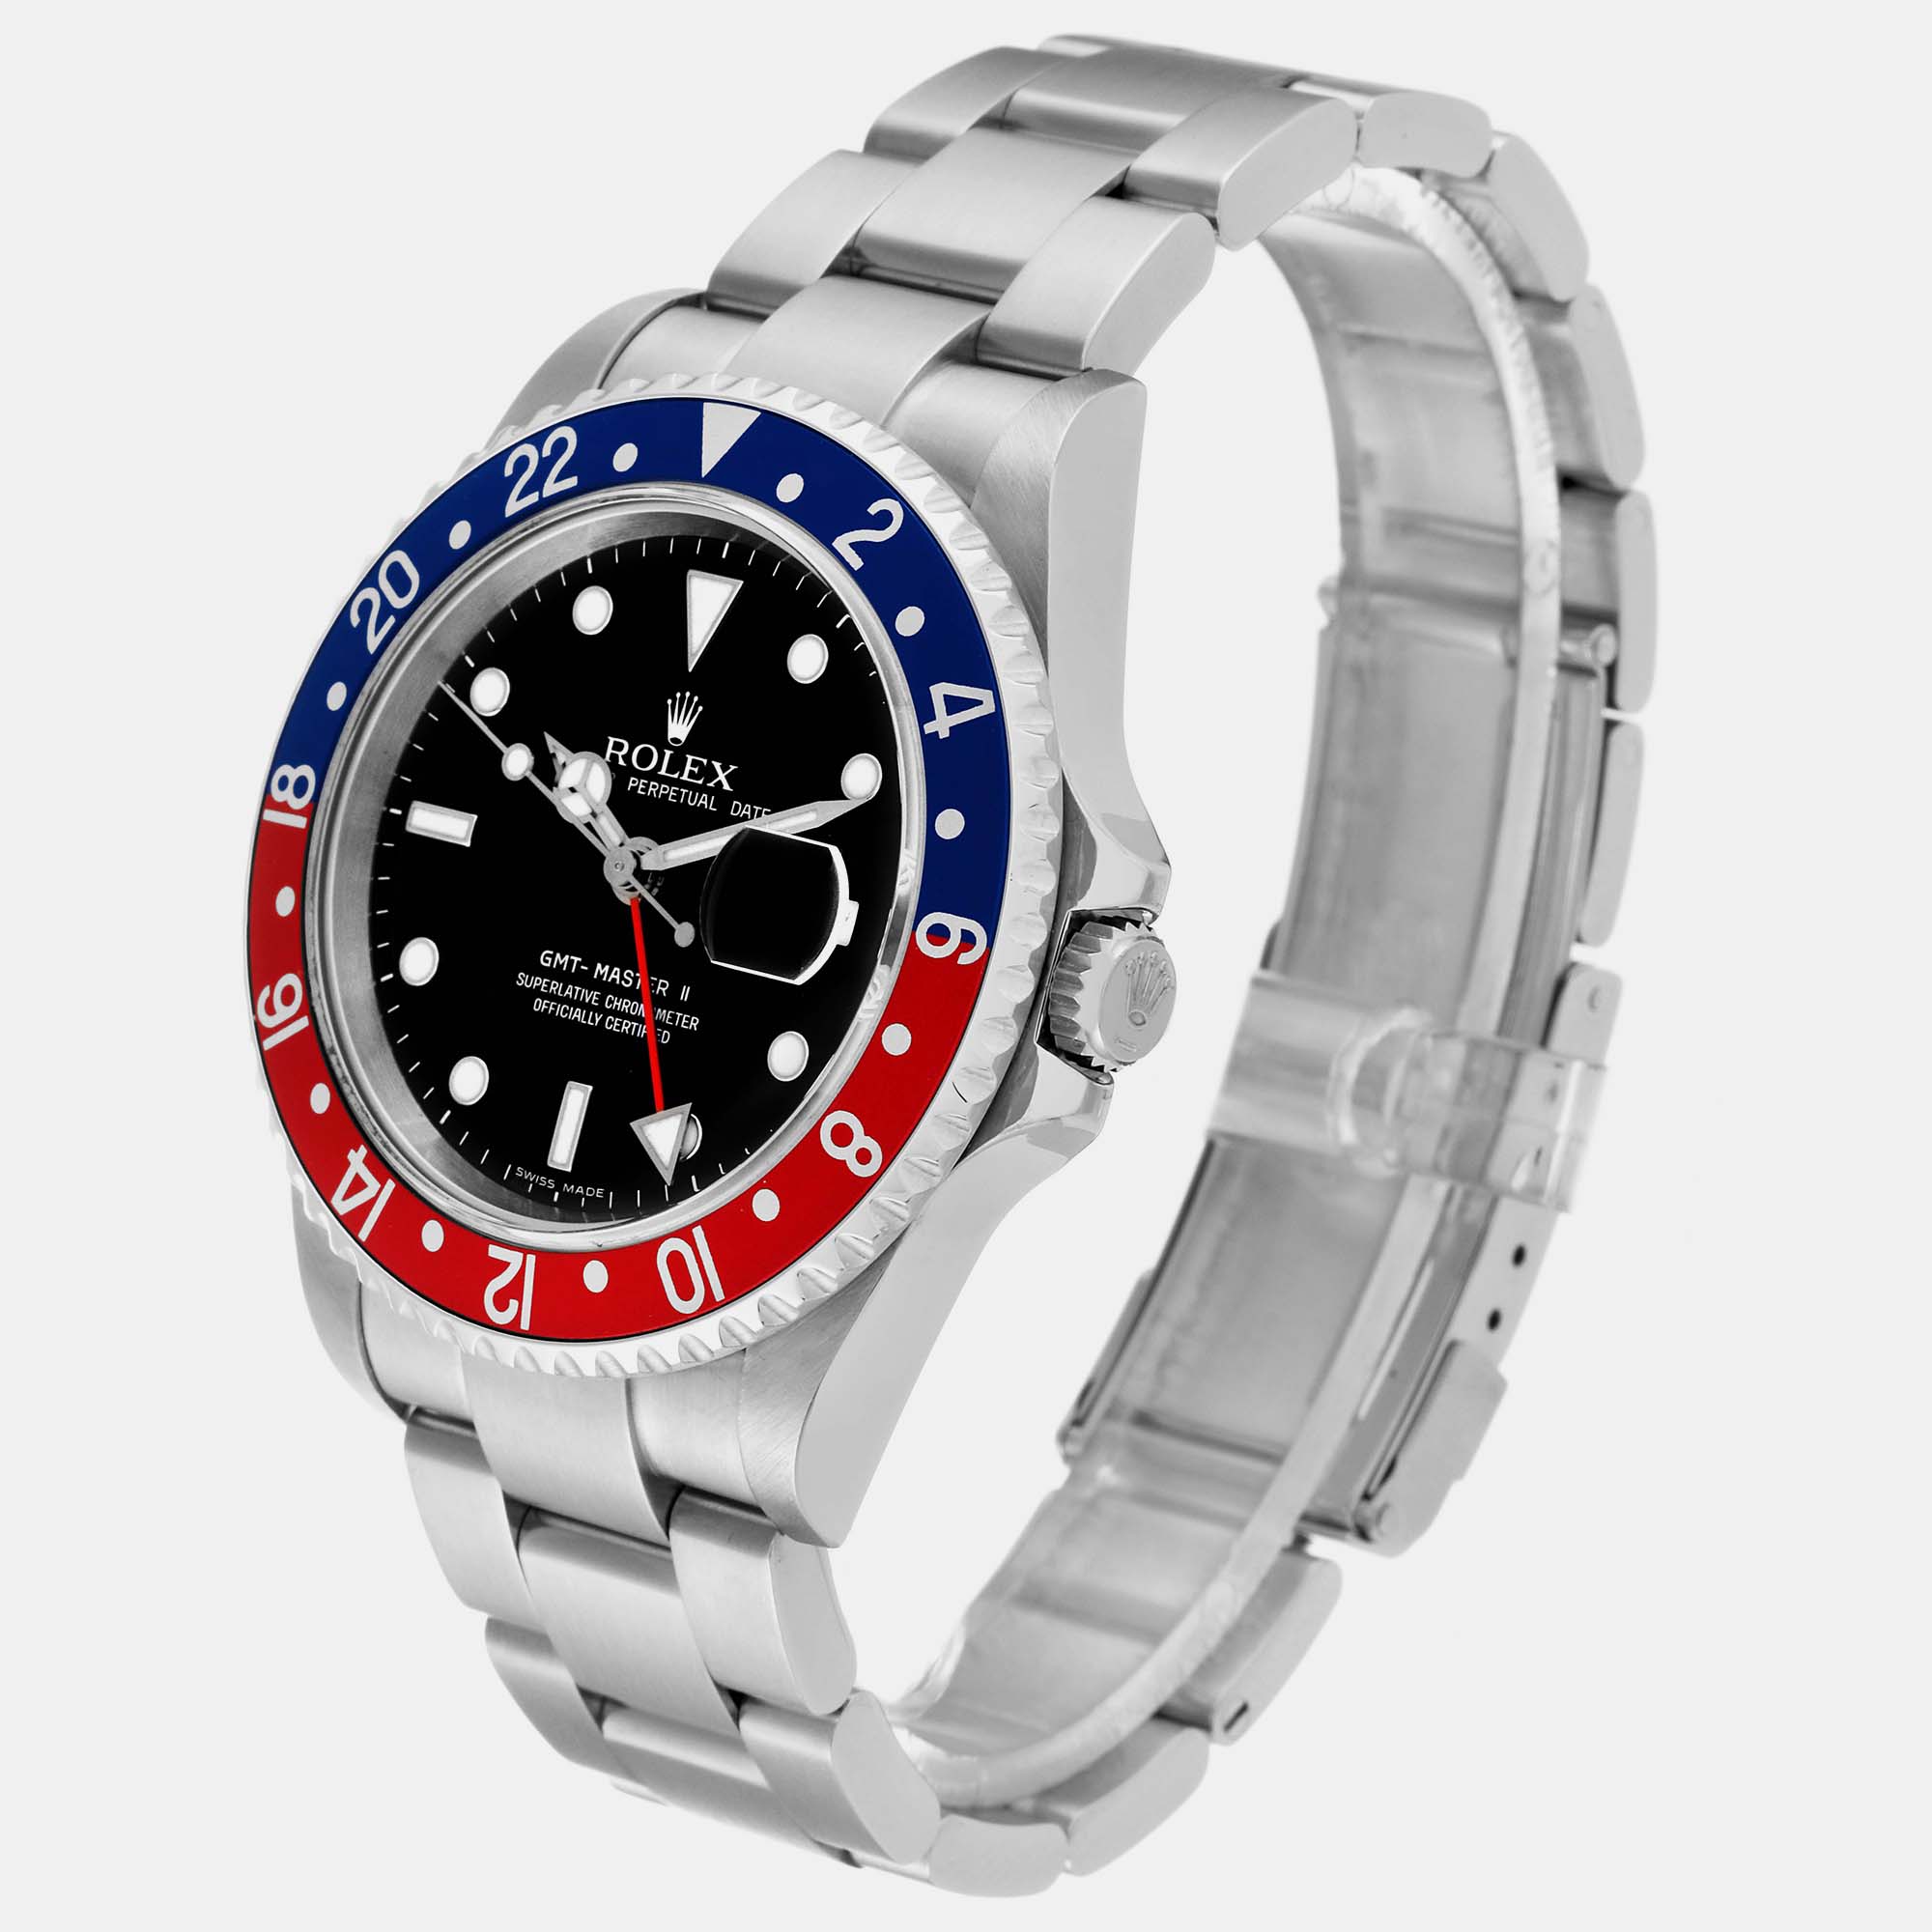 Rolex GMT Master II Blue Red Pepsi Error Dial Steel Men's Watch 16710 40 Mm